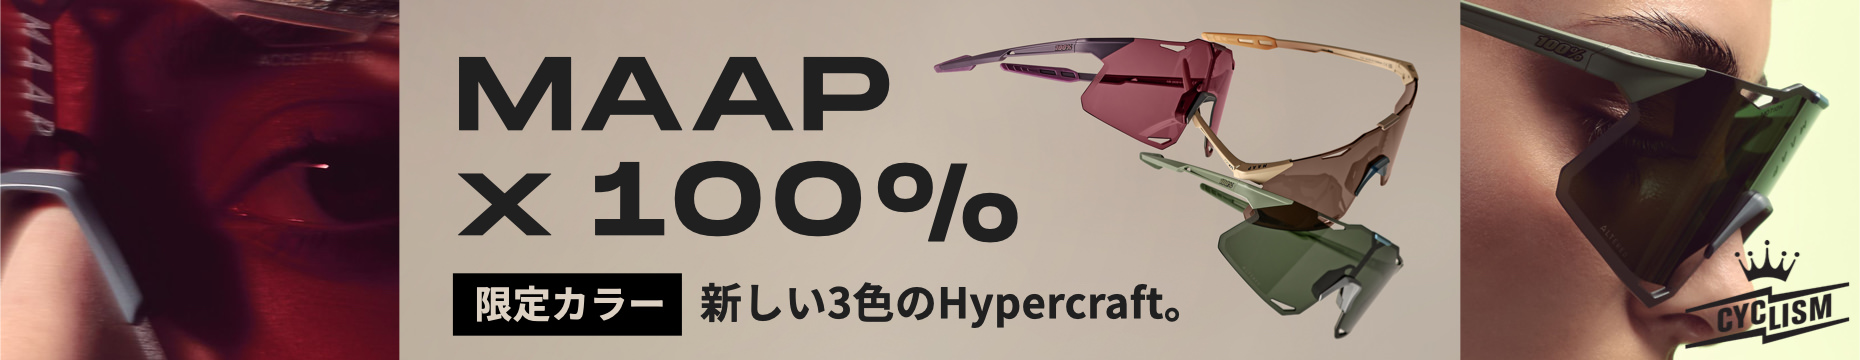 MAAP-100%